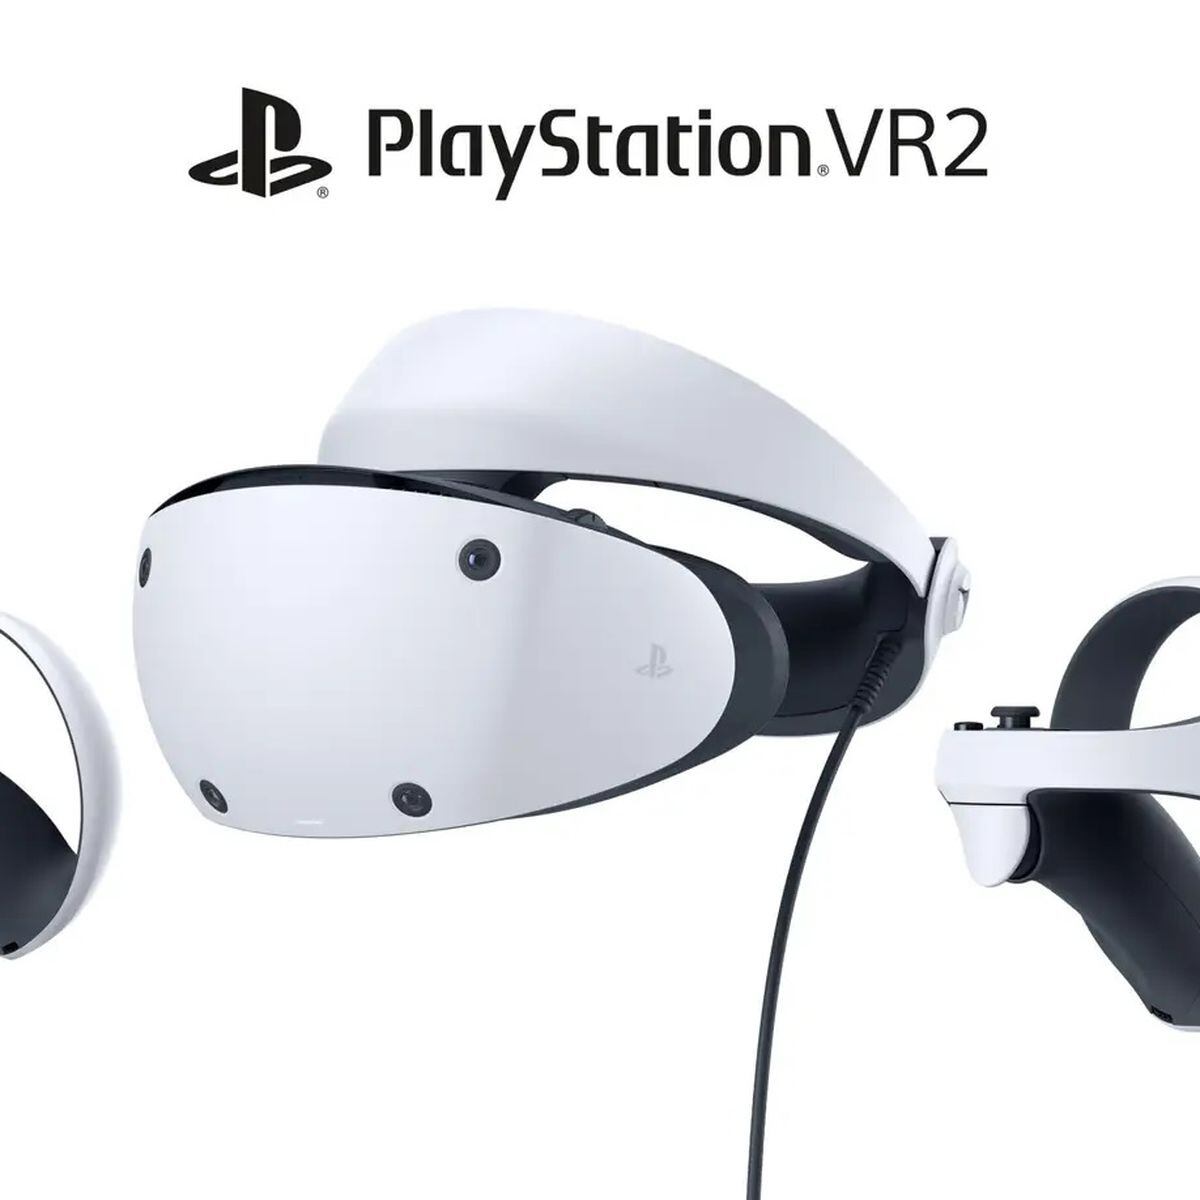 PlayStation anuncia o lançamento de 30 jogos VR até março de 2023